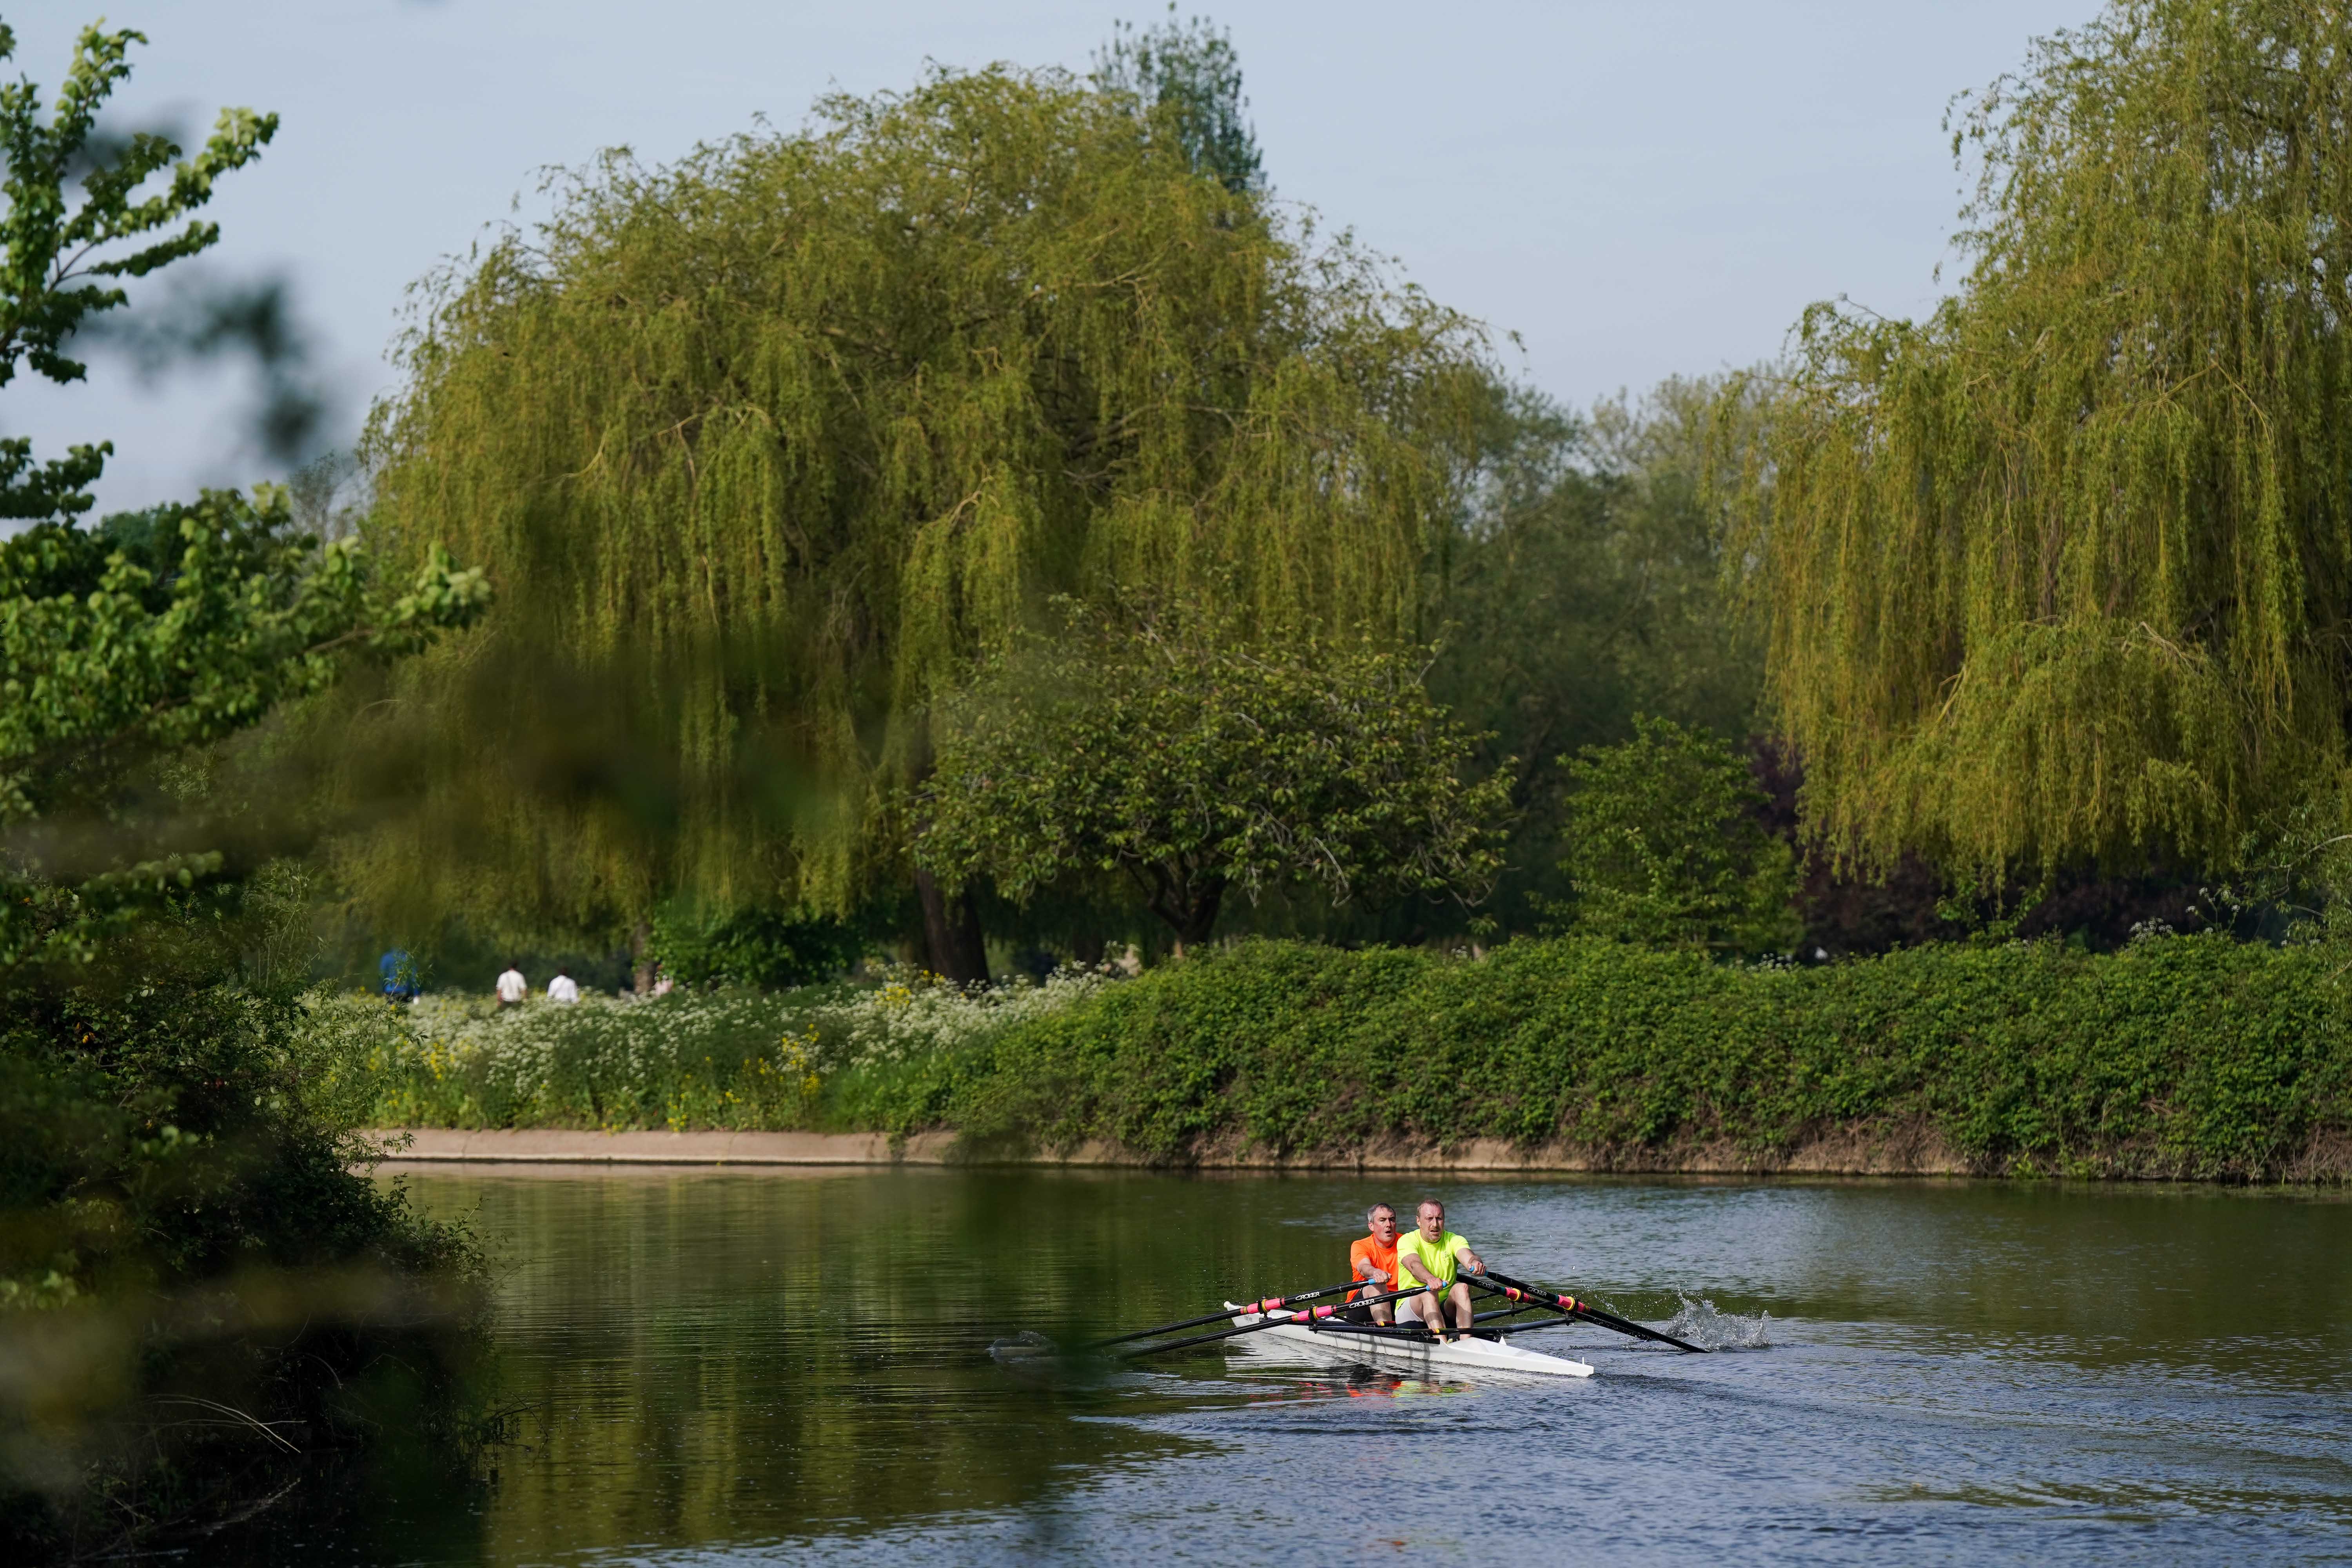 Menschen rudern am Fluss Avon am St. Nicholas' Park entlang